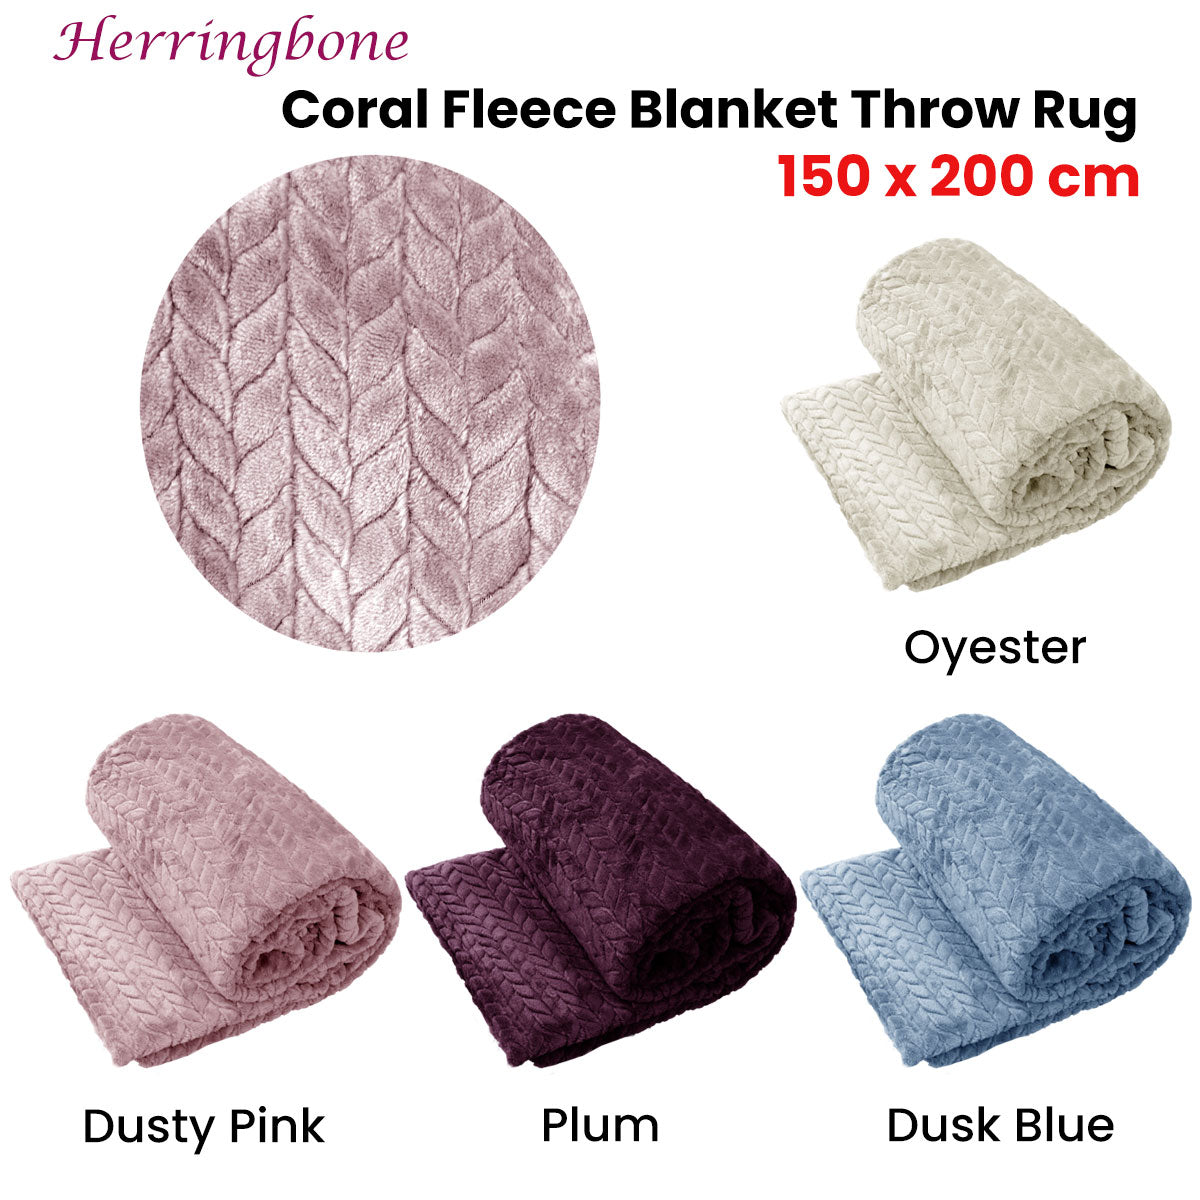 Herringbone Coral Fleece Blanket Throw Rug 150x200 cm Oyester - Newstart Furniture